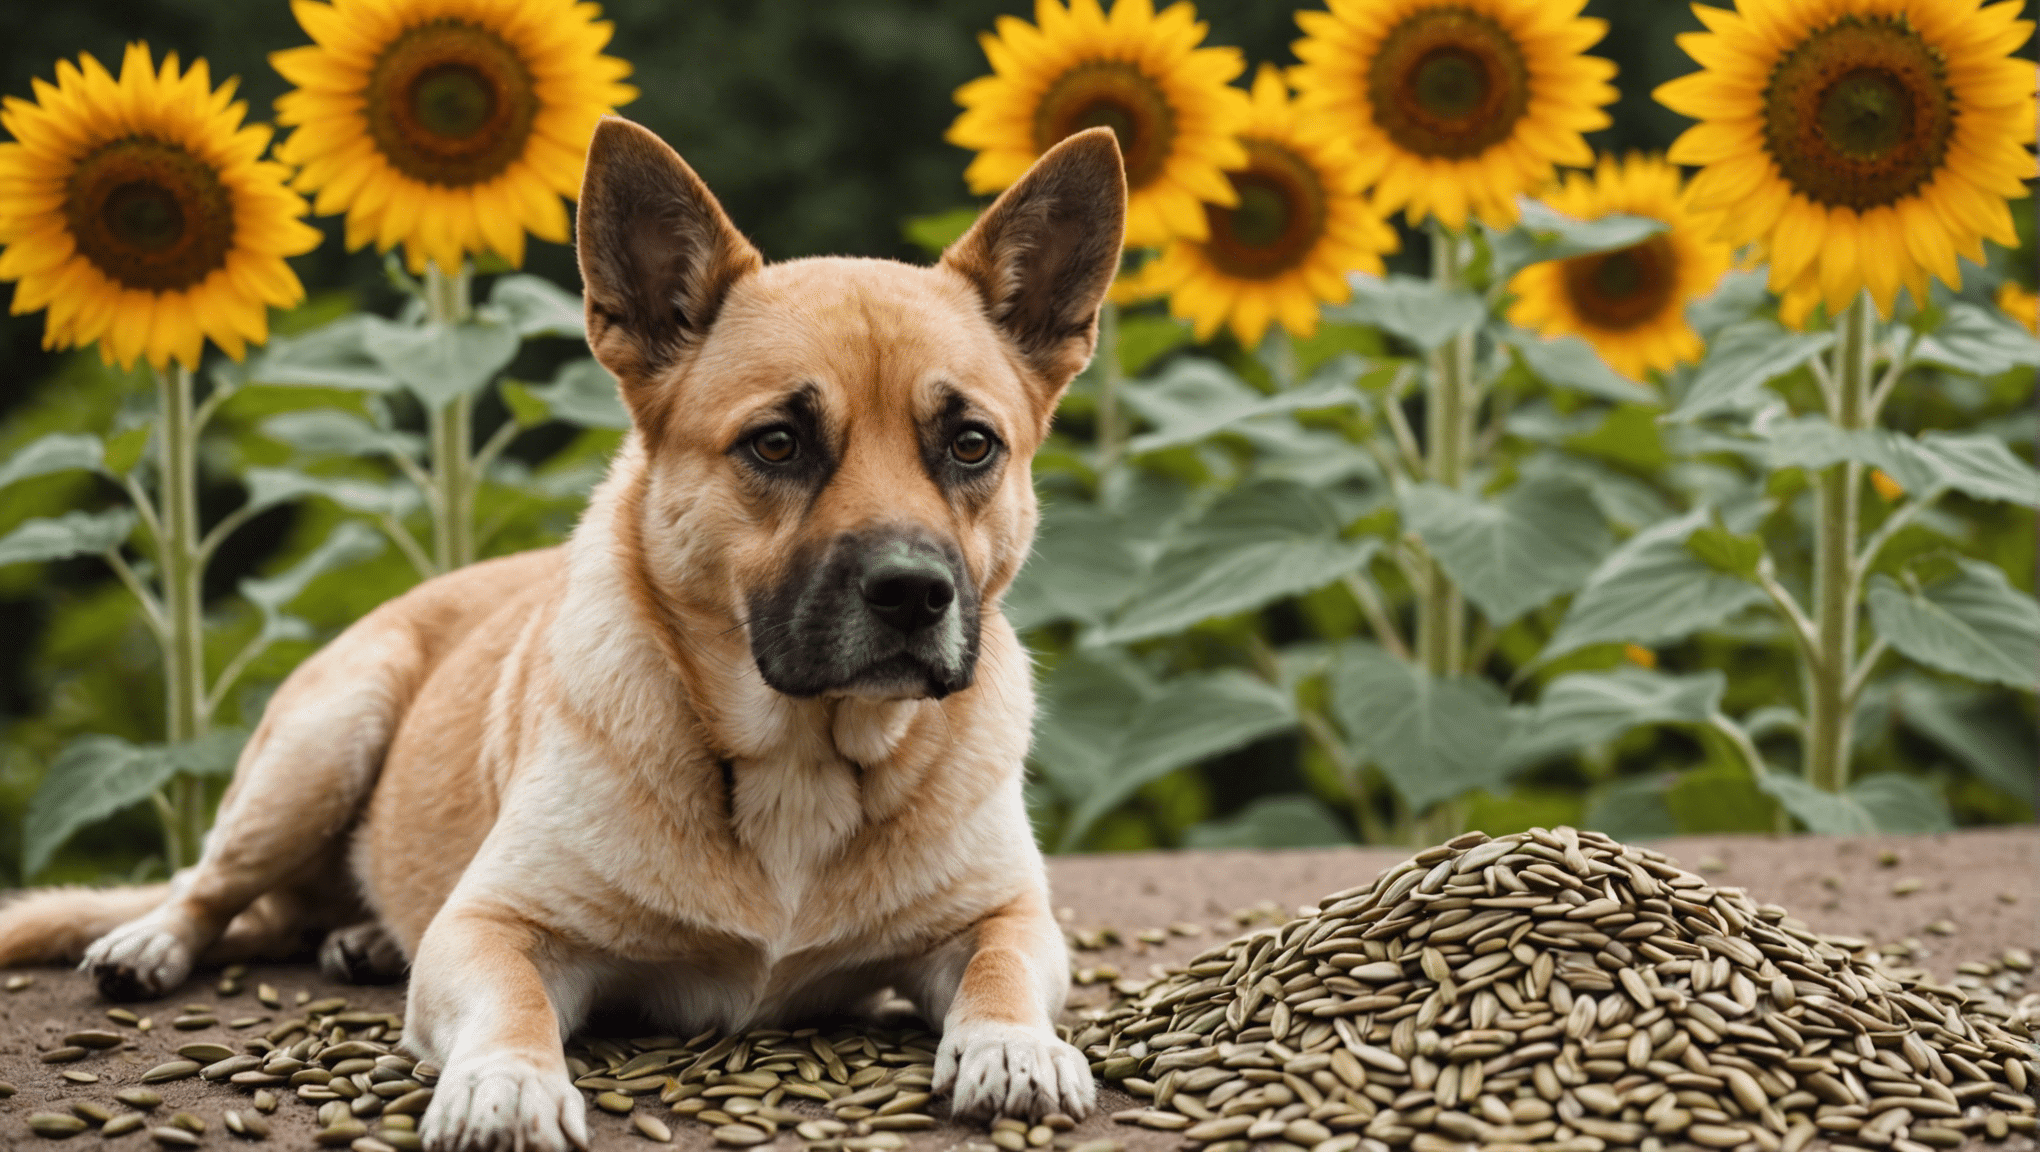 descubra se as sementes de girassol são seguras para os cães comerem e aprenda sobre os riscos e benefícios potenciais para o seu companheiro canino.